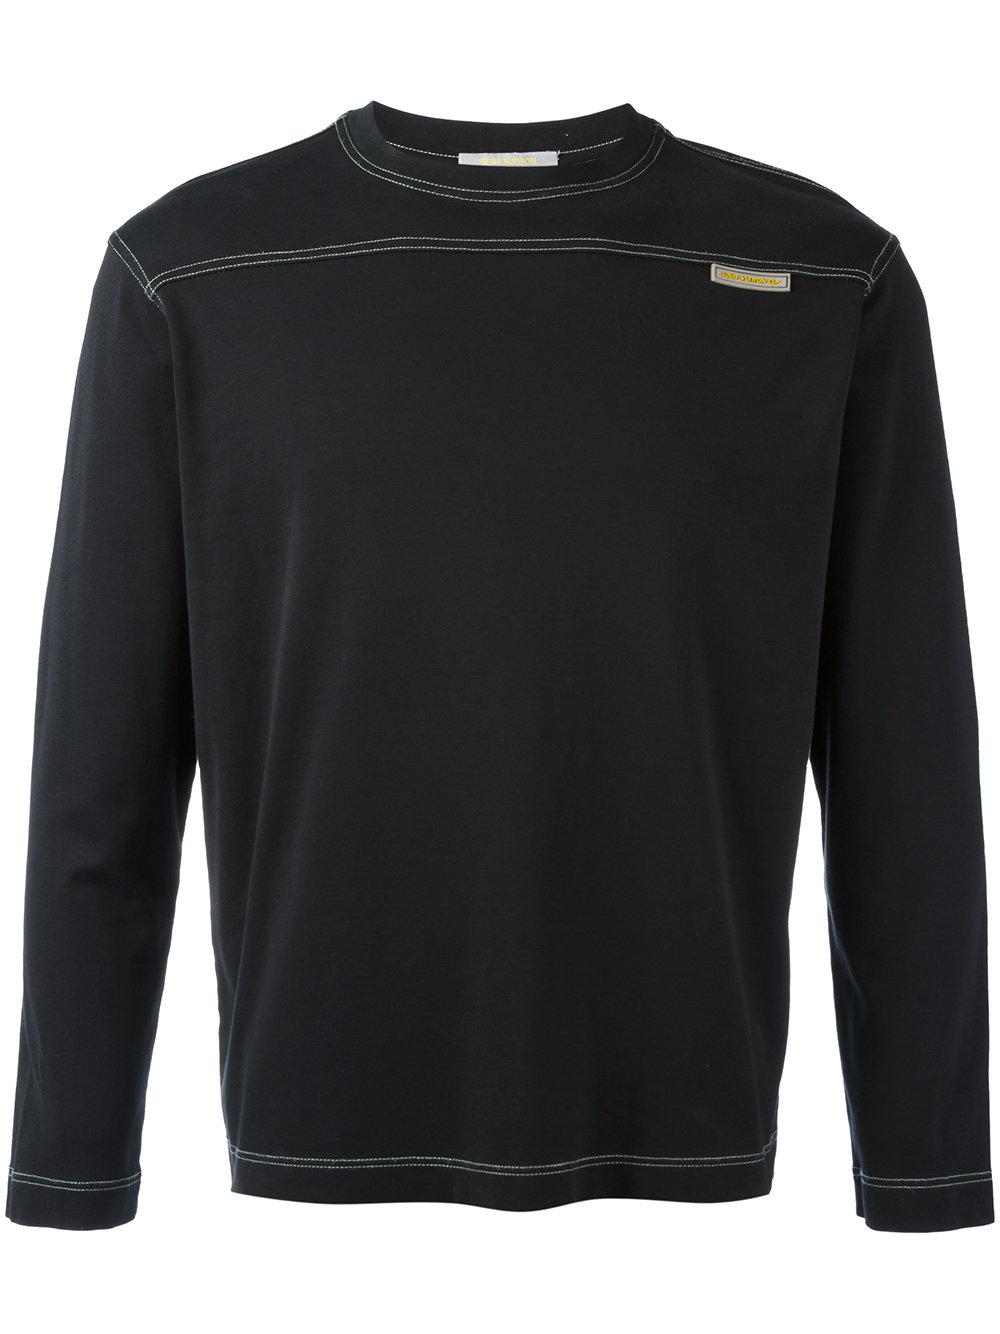 Louis Vuitton Cotton Stitch Detail Sweatshirt in Black for Men - Lyst